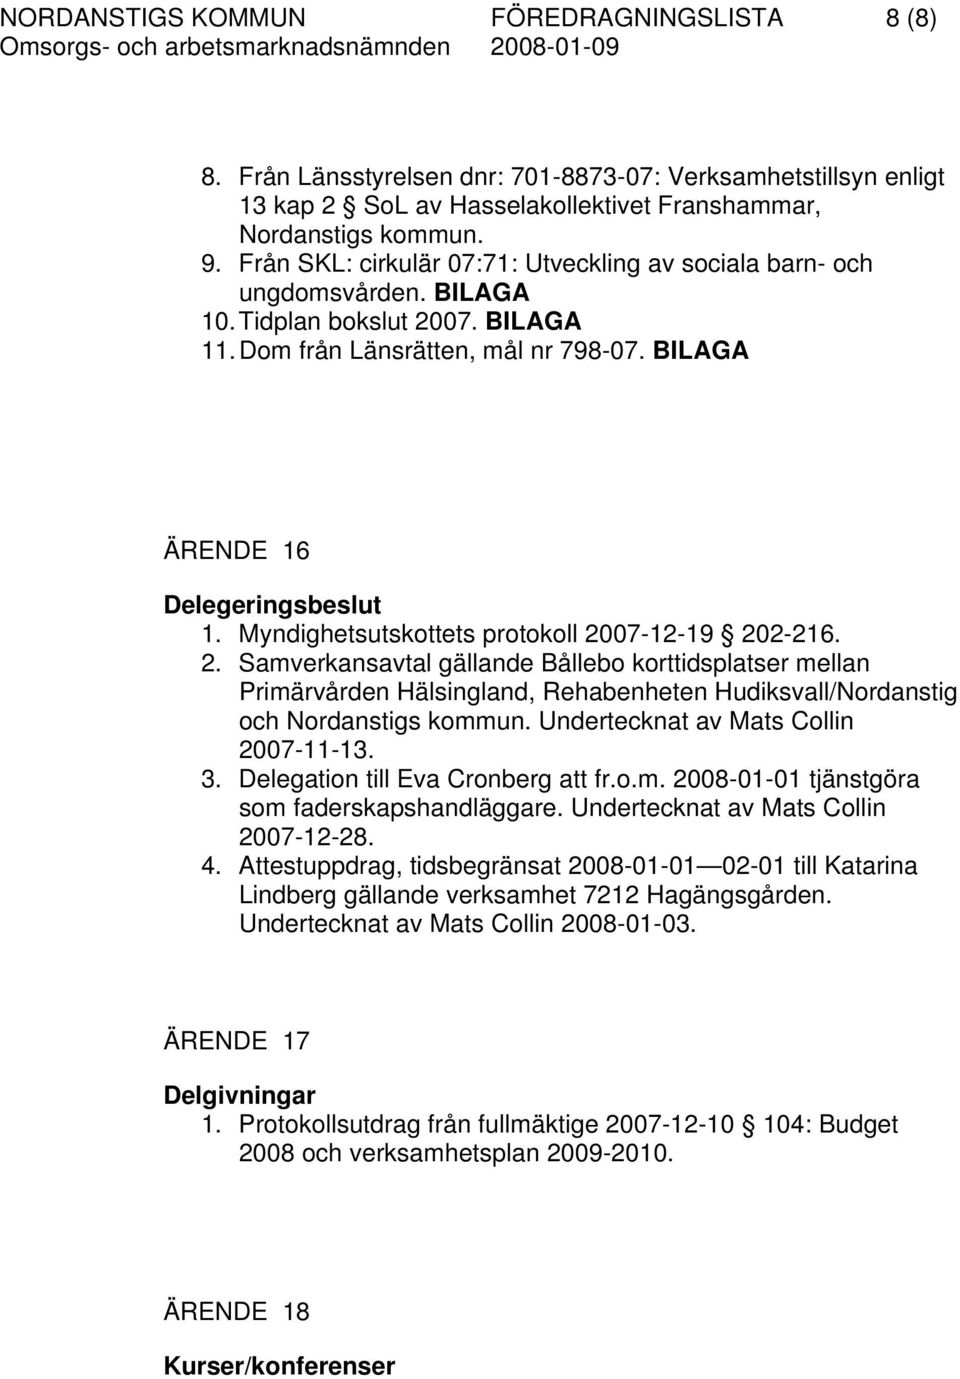 Myndighetsutskottets protokoll 2007-12-19 202-216. 2. Samverkansavtal gällande Bållebo korttidsplatser mellan Primärvården Hälsingland, Rehabenheten Hudiksvall/Nordanstig och Nordanstigs kommun.